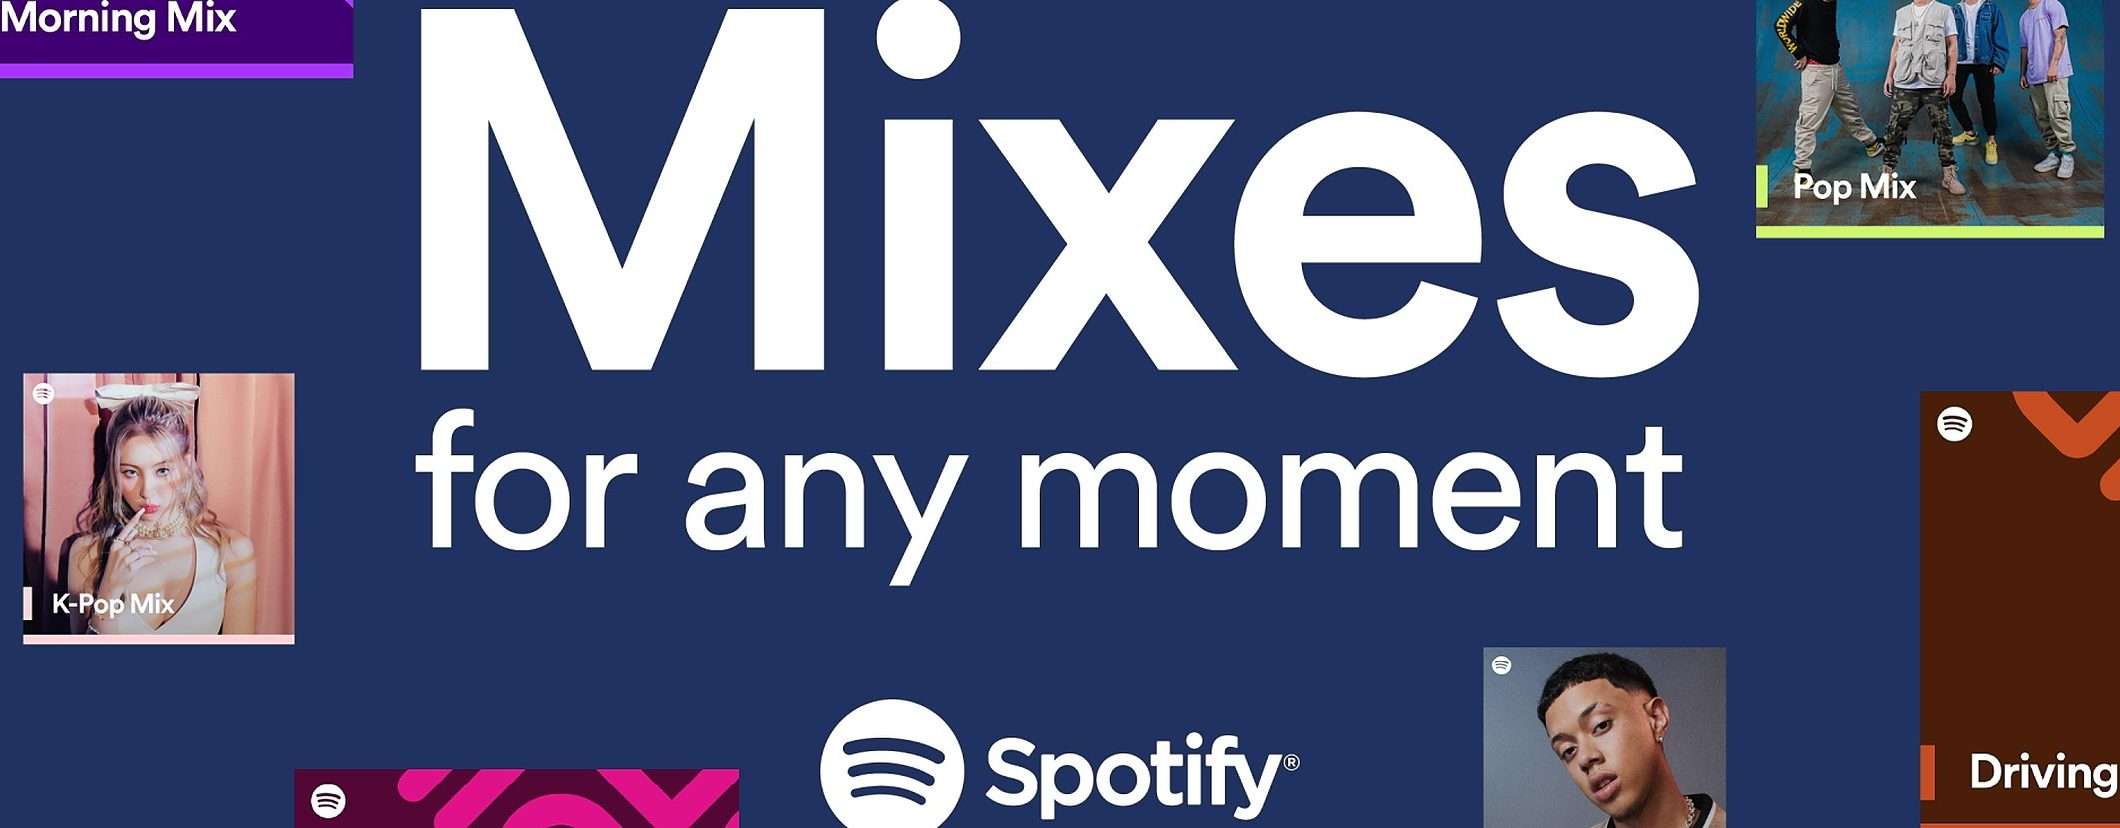 Spotify annuncia Niche Mixes, nuove playlist molto bizzarre